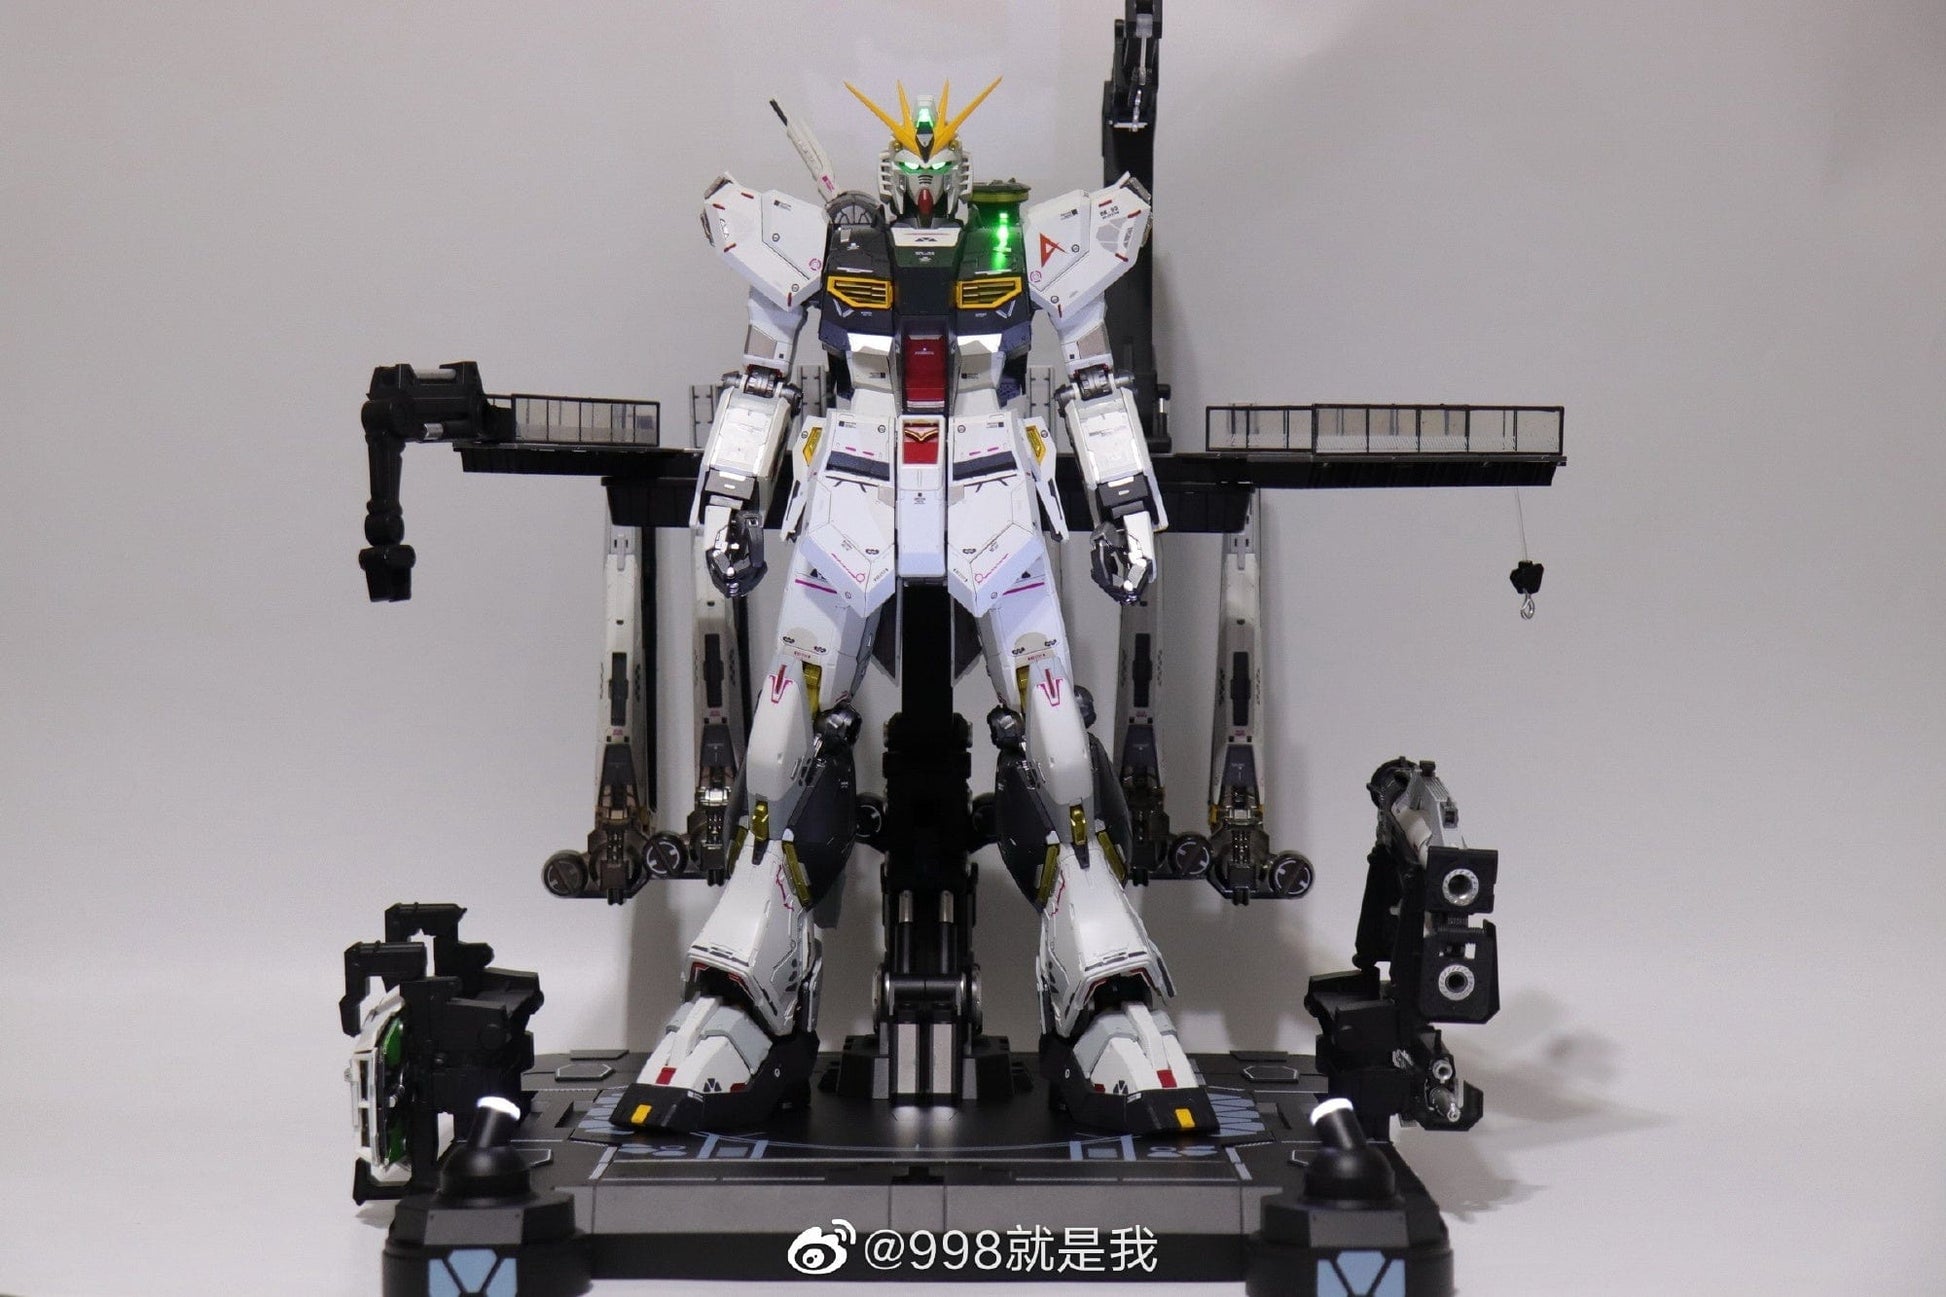 Daban Scale Model Kits 1/60 PG Daban Kaitai Shou Ki RX-93v Gundam Model Kit